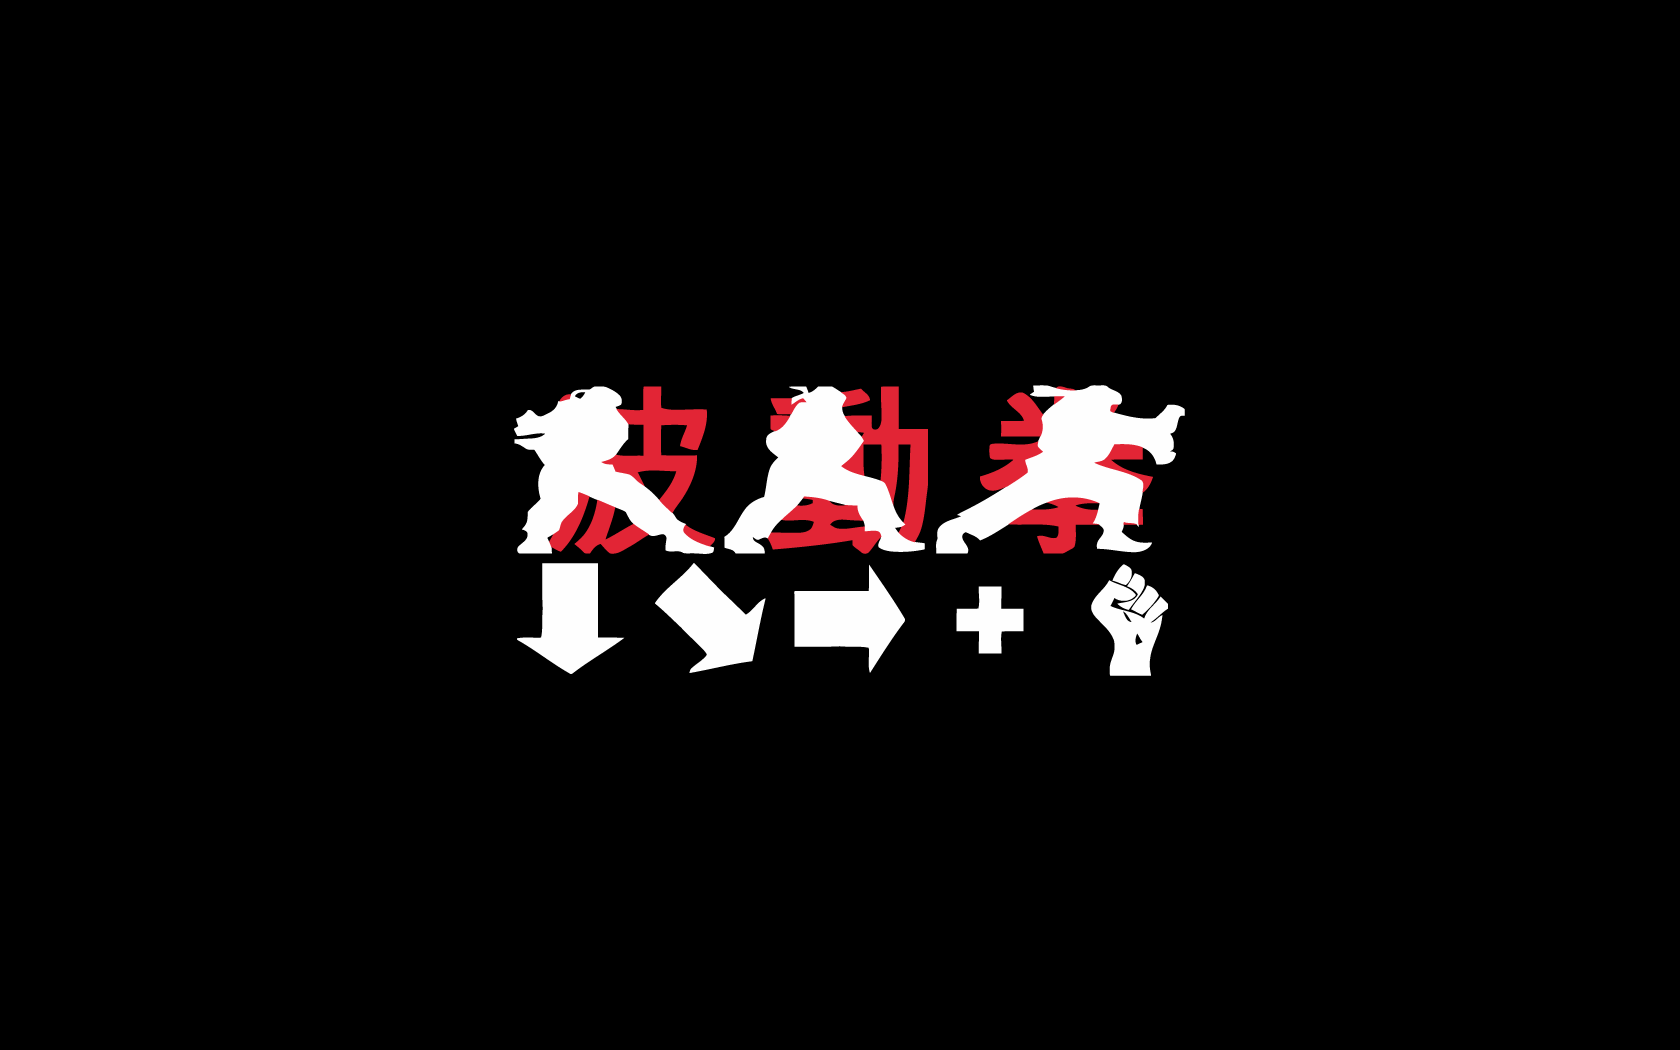 Ryu street fighter hadouken wallpaper - (#178229) - High Quality ...